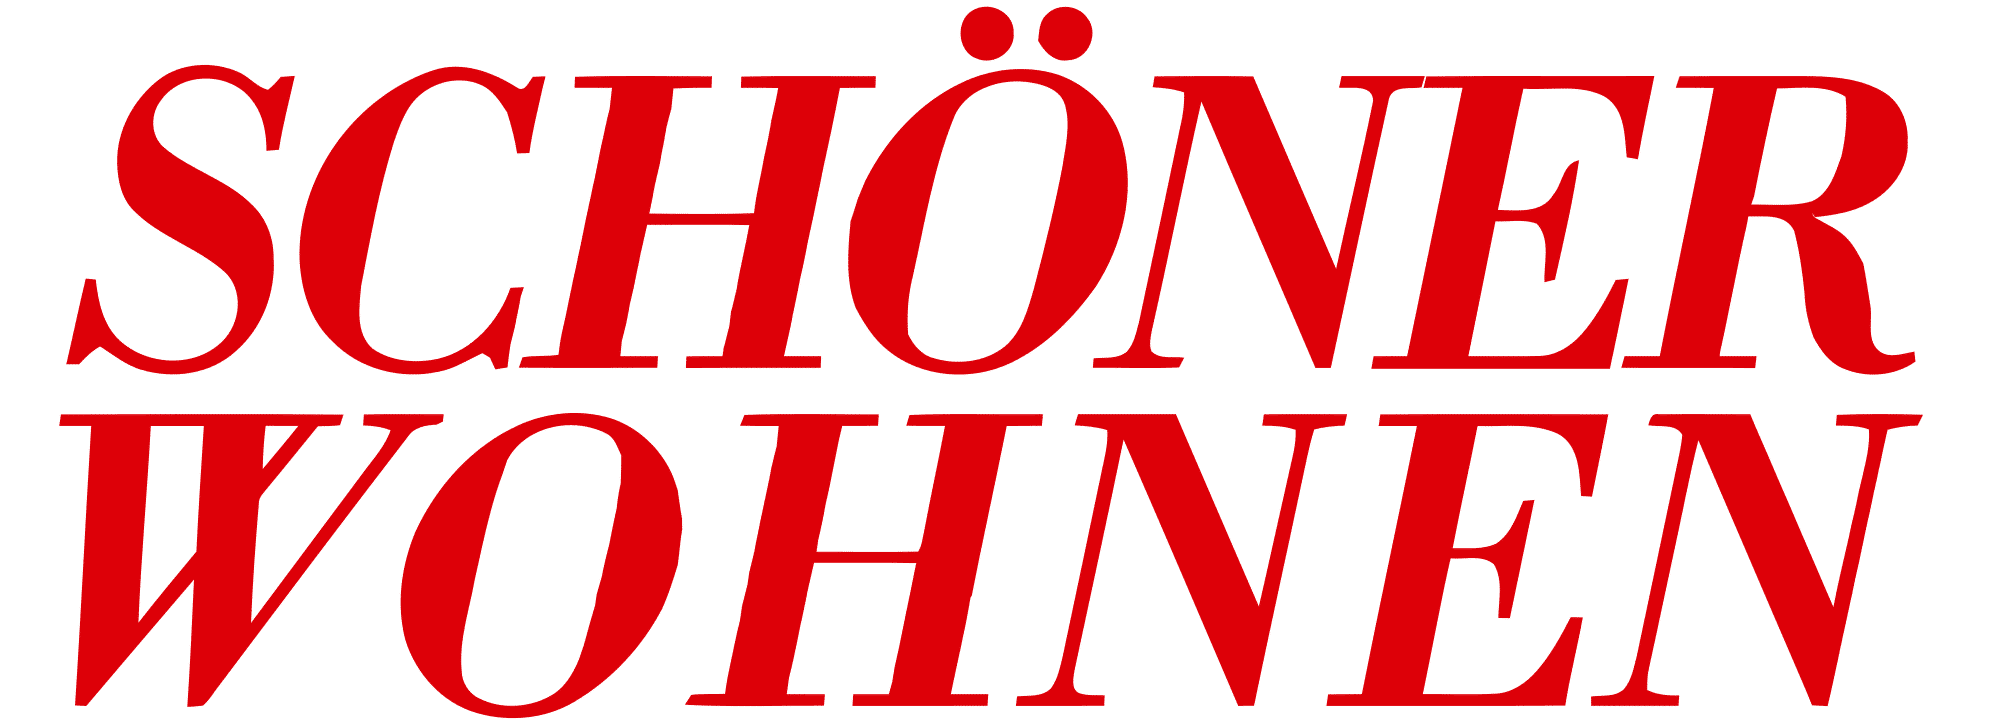 LA MAISON hotel Saarlouis - Schoener Wohnen Logo - press